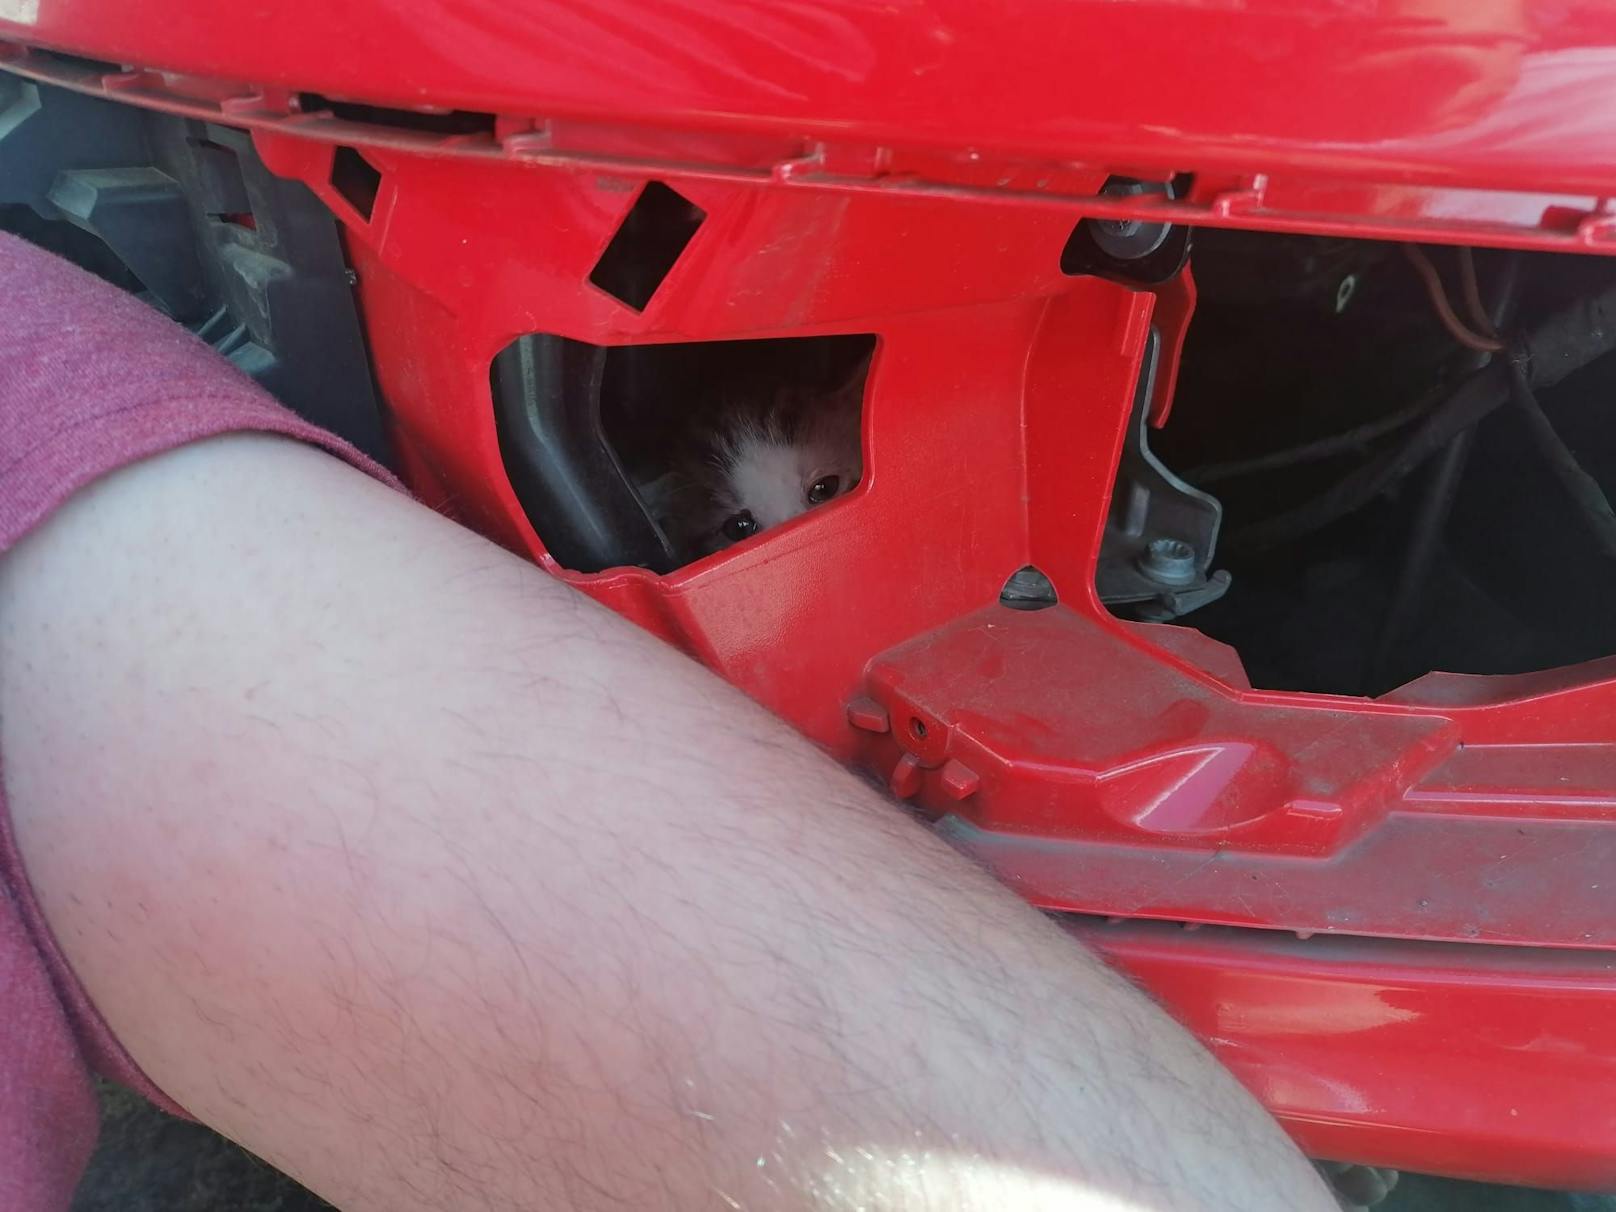 Das Babykatzerl war im Motorraum des VW versteckt.